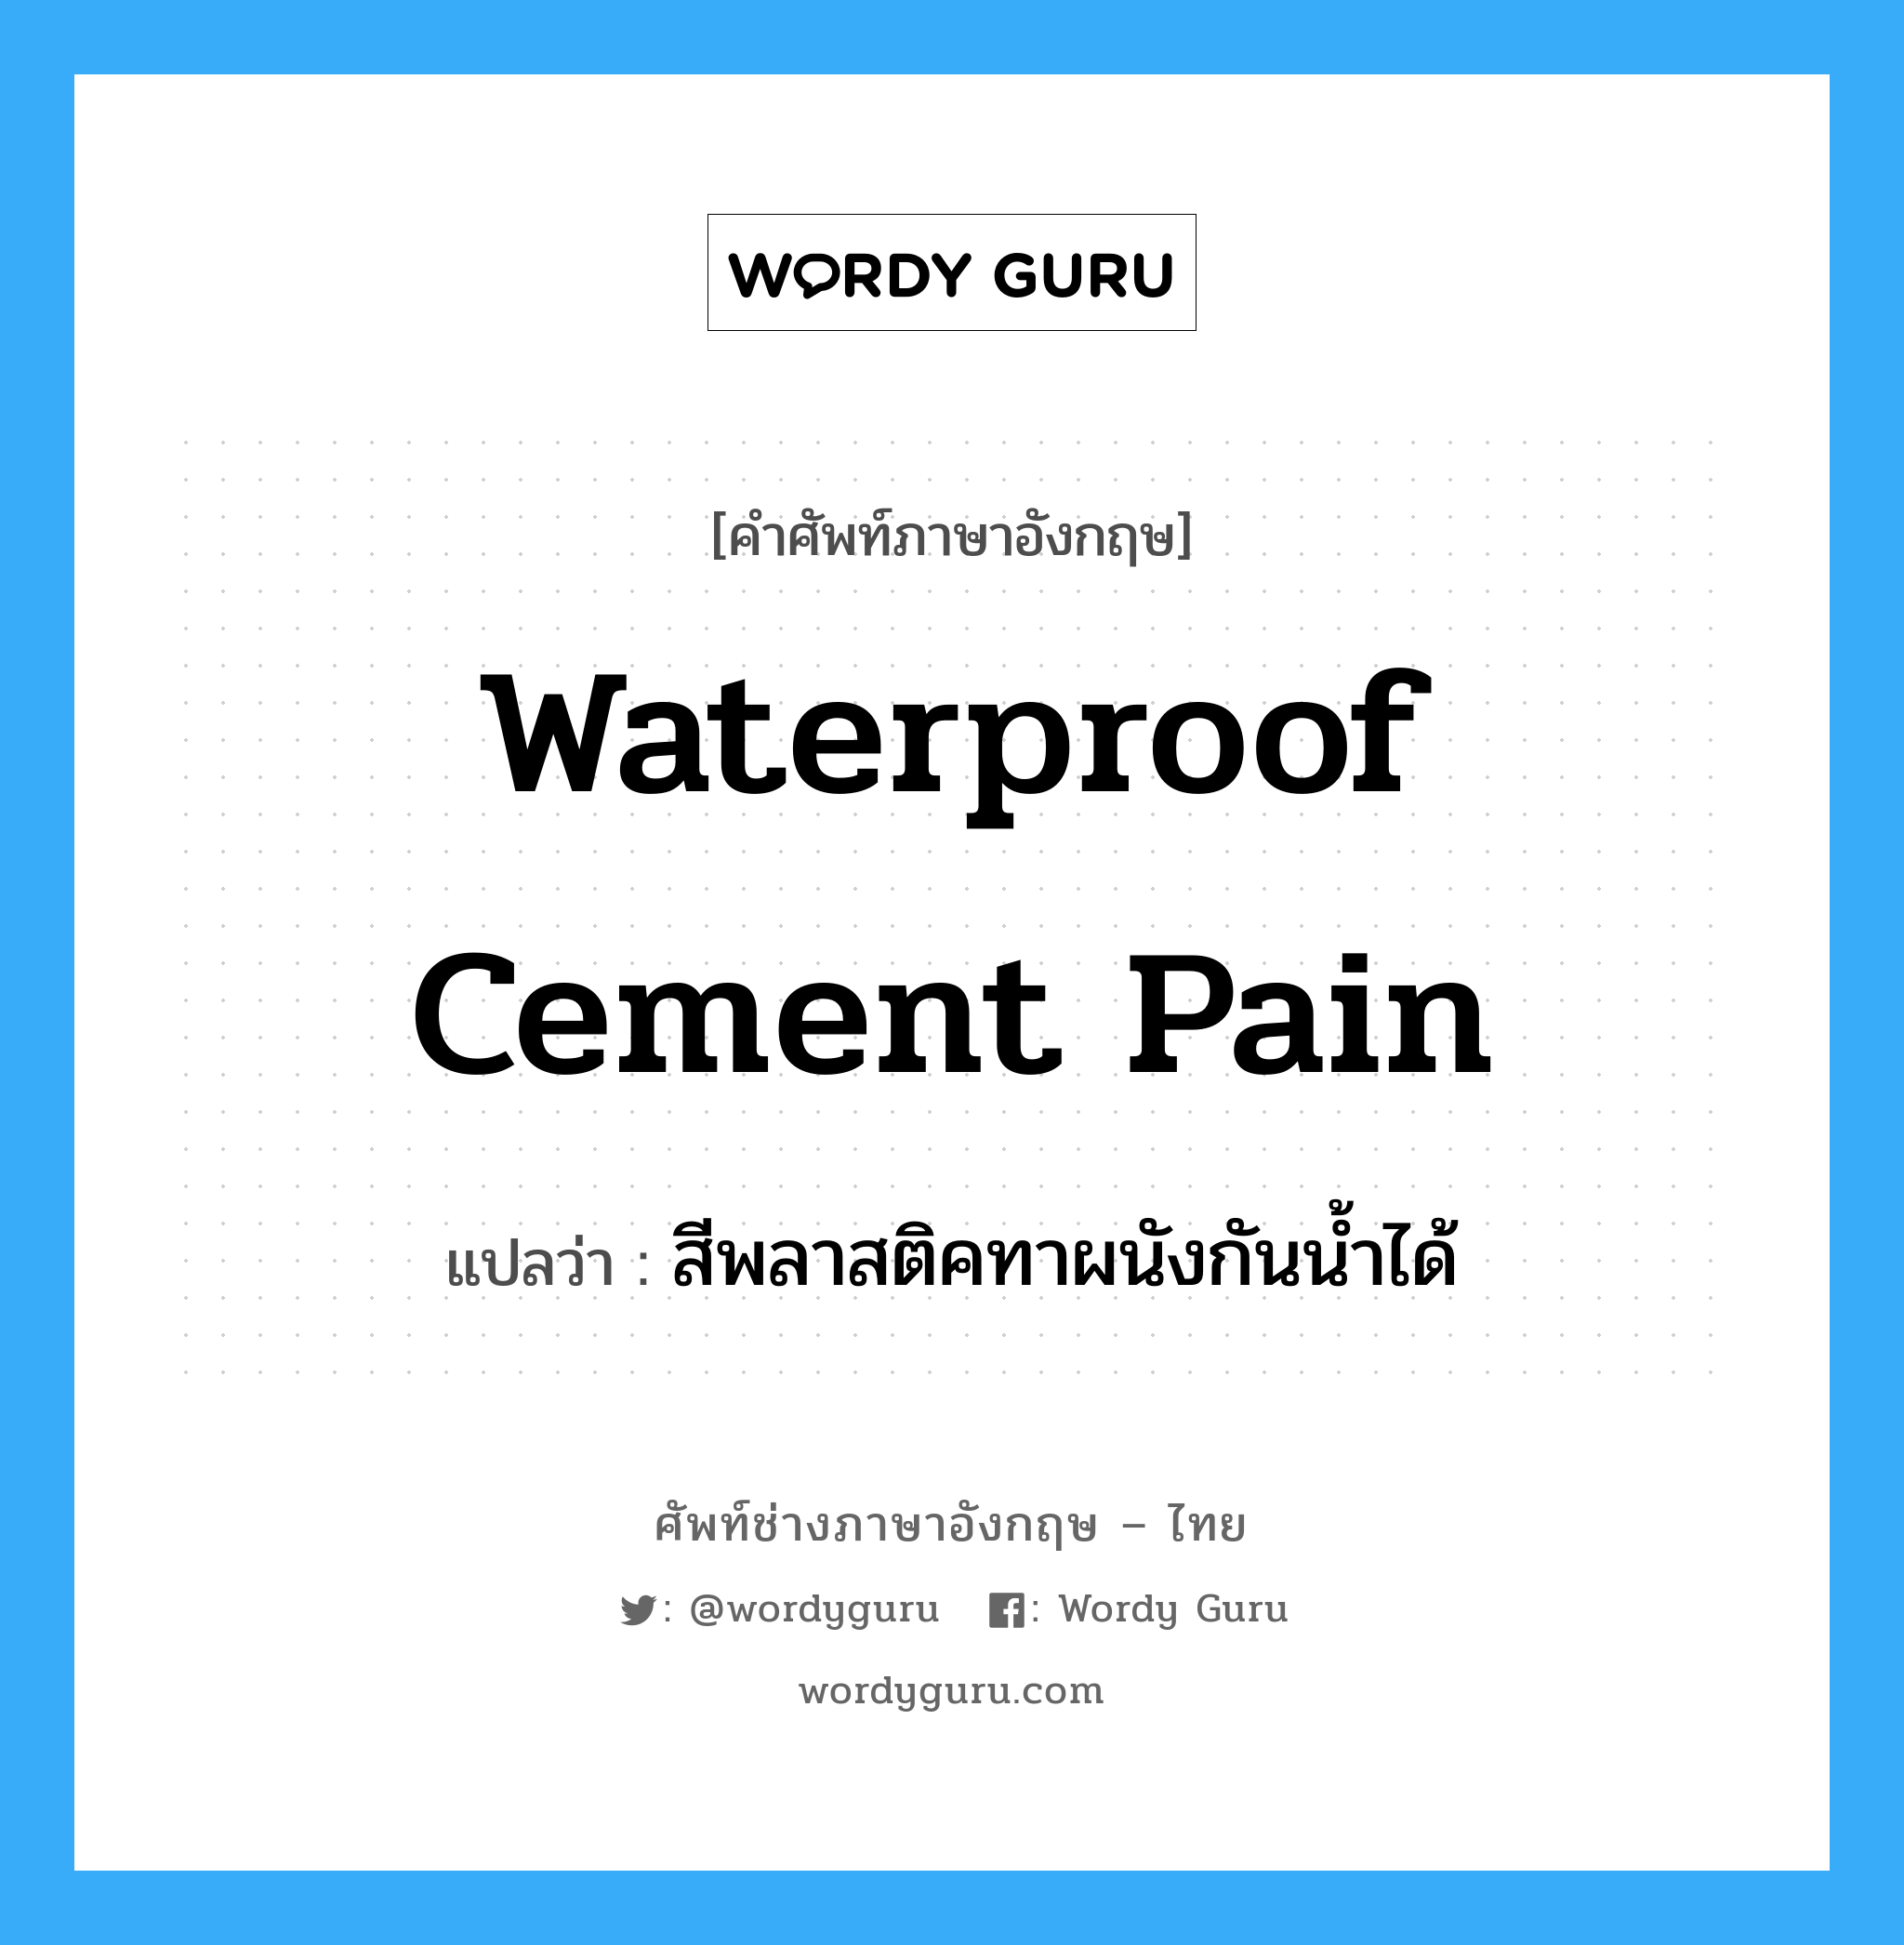 สีพลาสติคทาผนังกันน้ำได้ ภาษาอังกฤษ?, คำศัพท์ช่างภาษาอังกฤษ - ไทย สีพลาสติคทาผนังกันน้ำได้ คำศัพท์ภาษาอังกฤษ สีพลาสติคทาผนังกันน้ำได้ แปลว่า waterproof cement pain